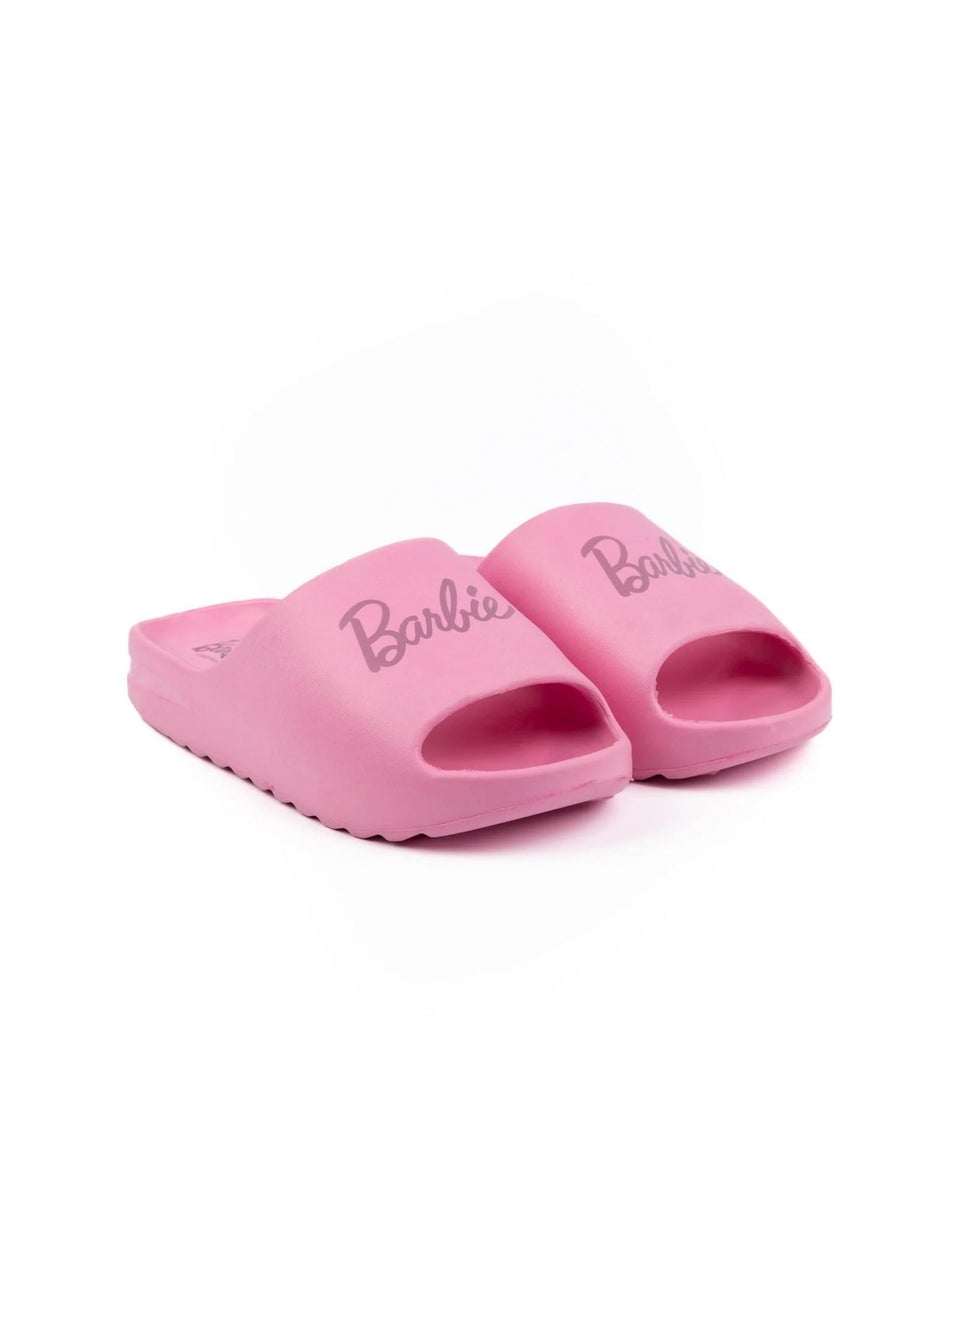 Barbie Pink Sliders